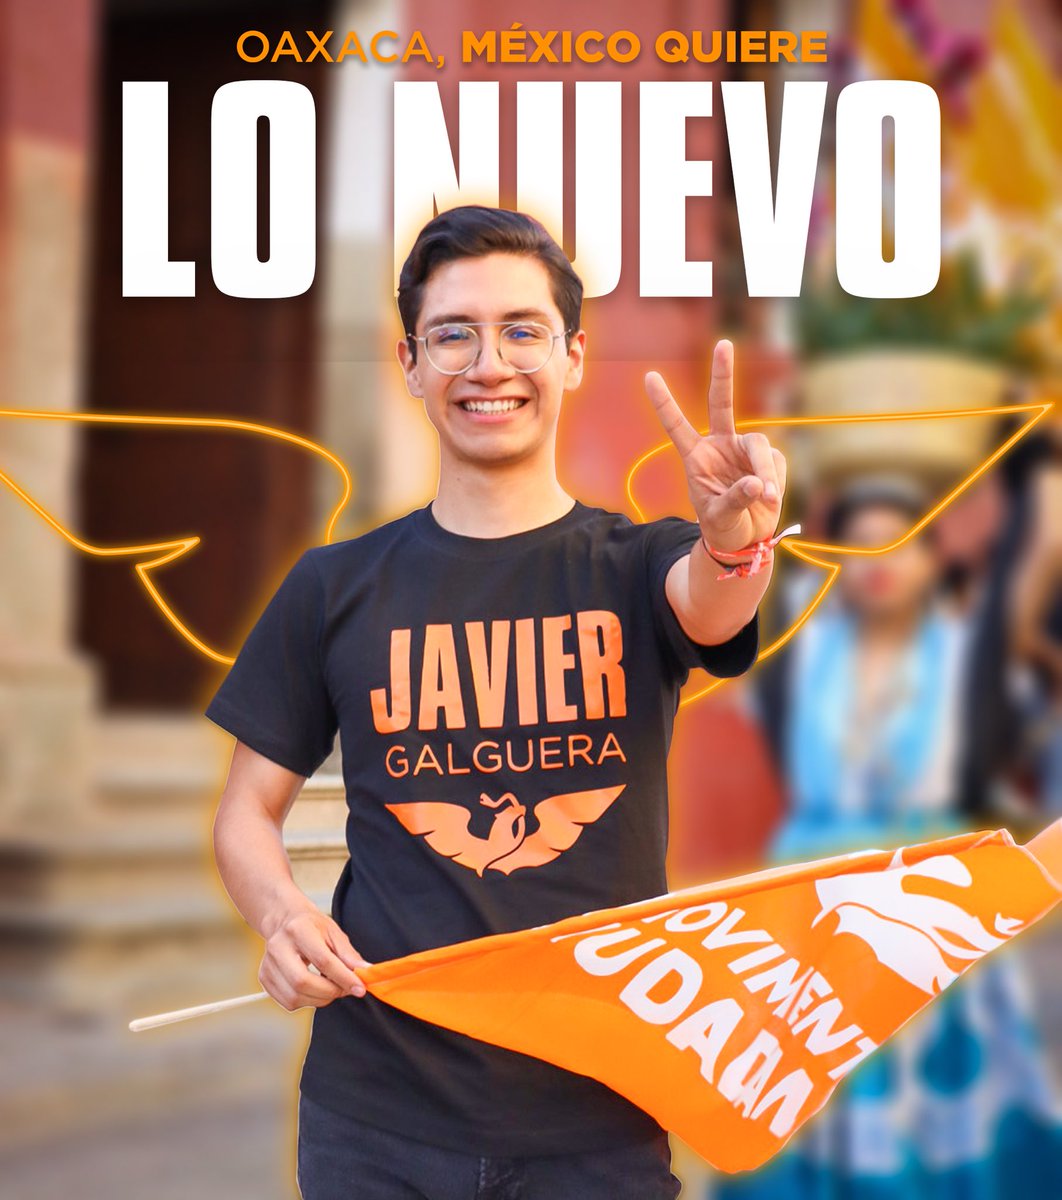 ¡A la vieja política le decimos adiós! Lo Nuevo es Joven y apenas comienza. 👊🏼🍊

Soy Javier Galguera y estoy listo.

#Oaxaca #DiputadoFederal #MovimientoCiudadano #FosfoFosfo #JavierGalguera #LoNuevo